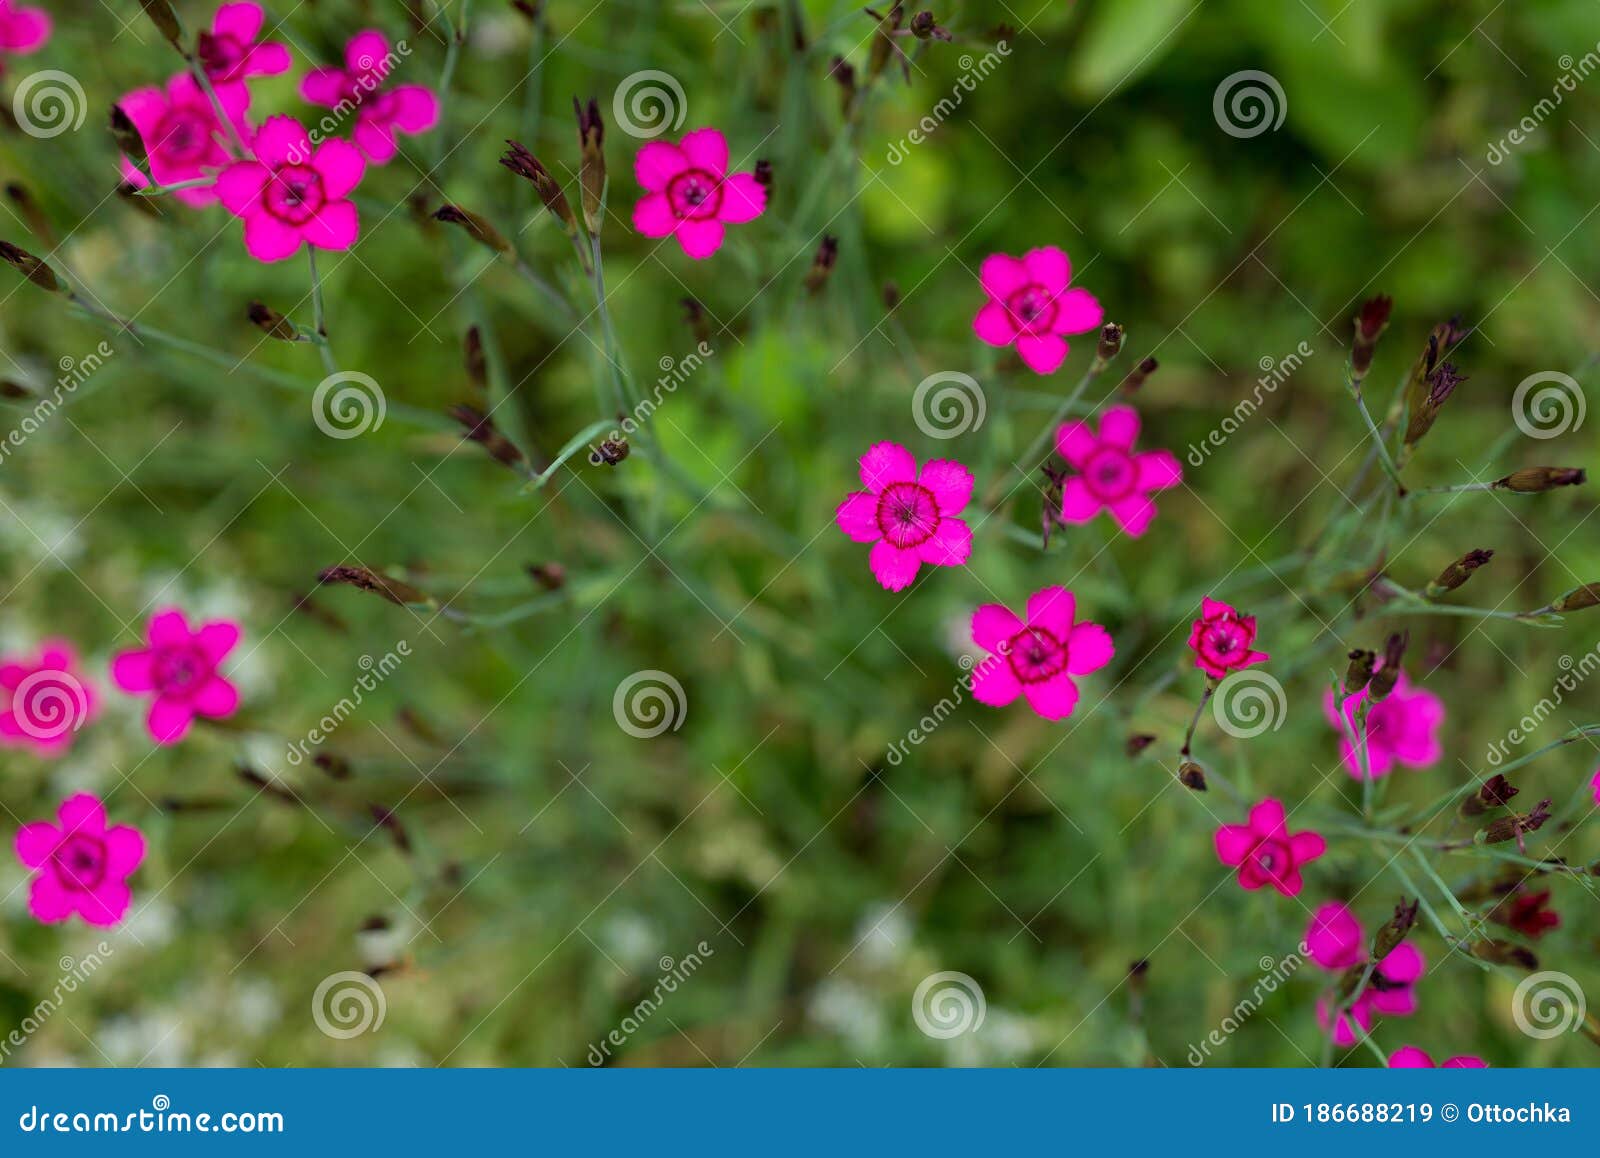 flowers dianthus deltoids